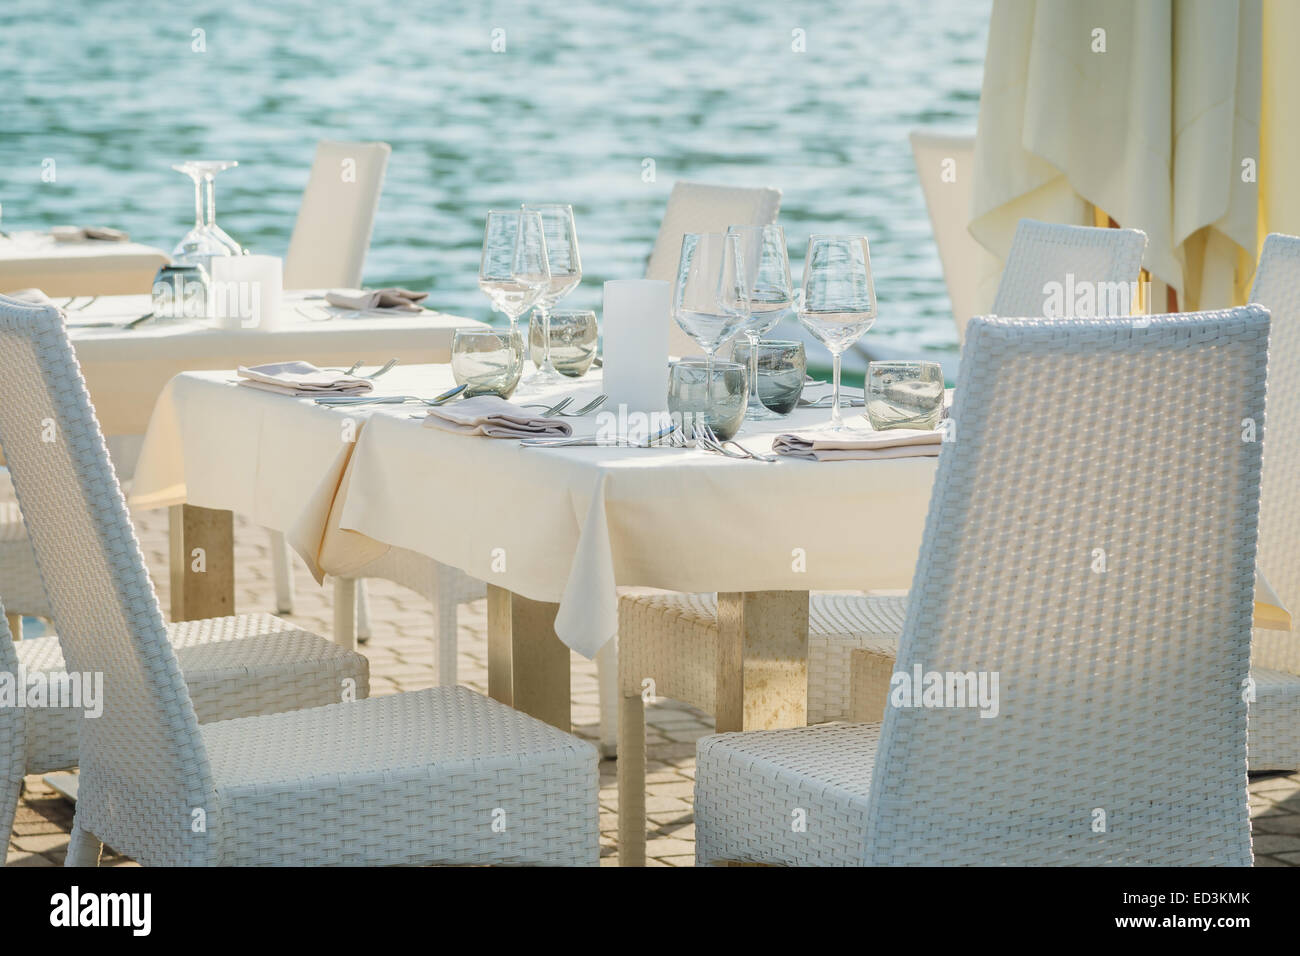 Set de table sur la mer Banque D'Images